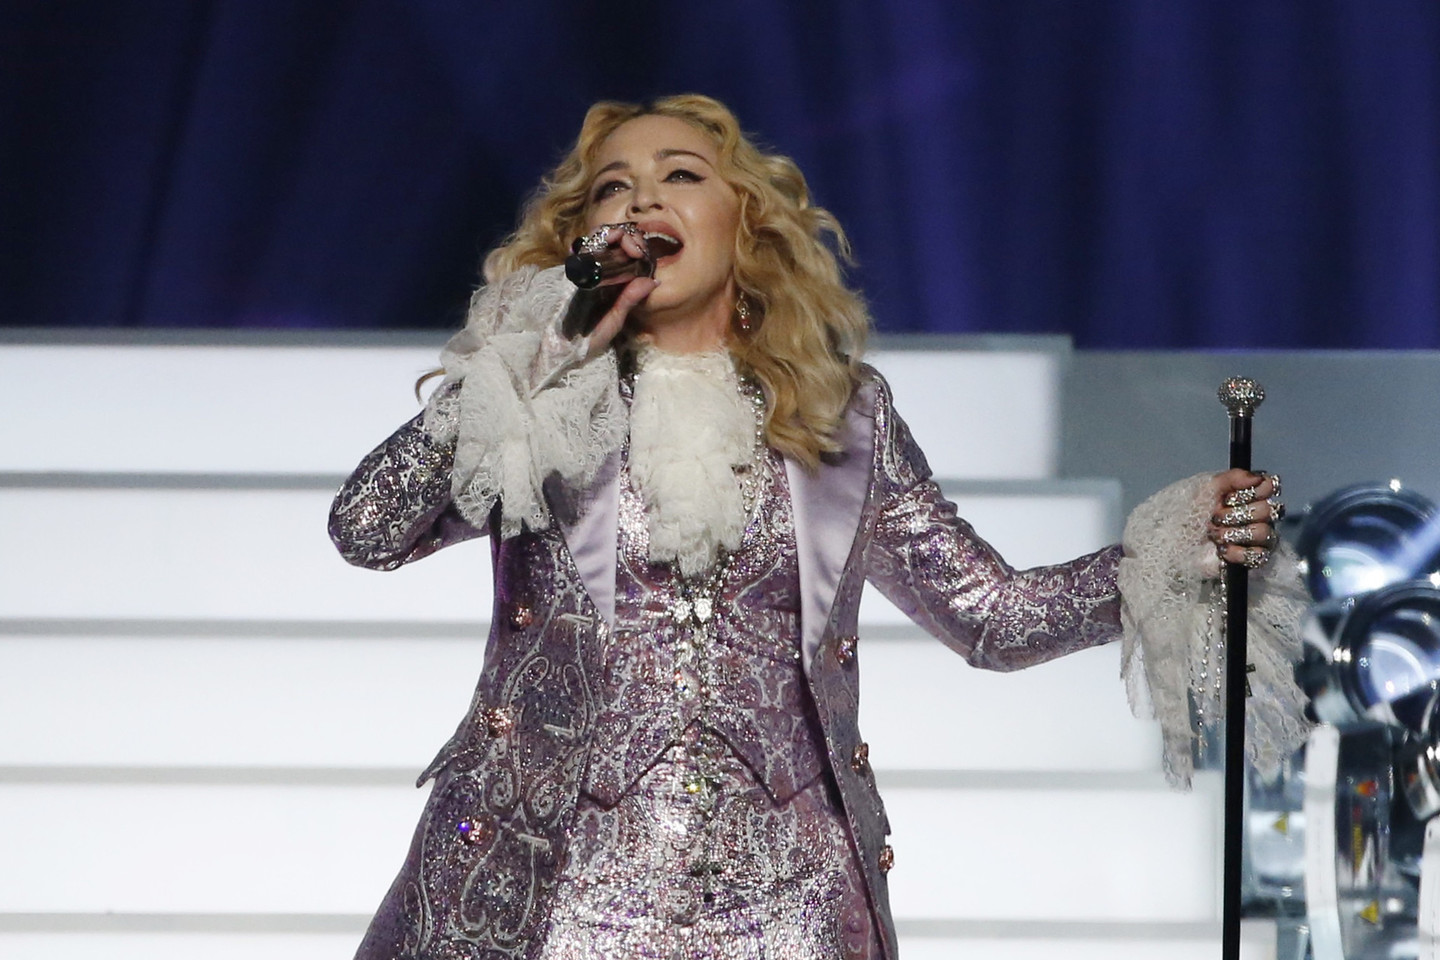 Kritikai teigė, kad Madonnos numeris per mažai priminė patį velionį dainininką.<br>Scanpix nuotr.